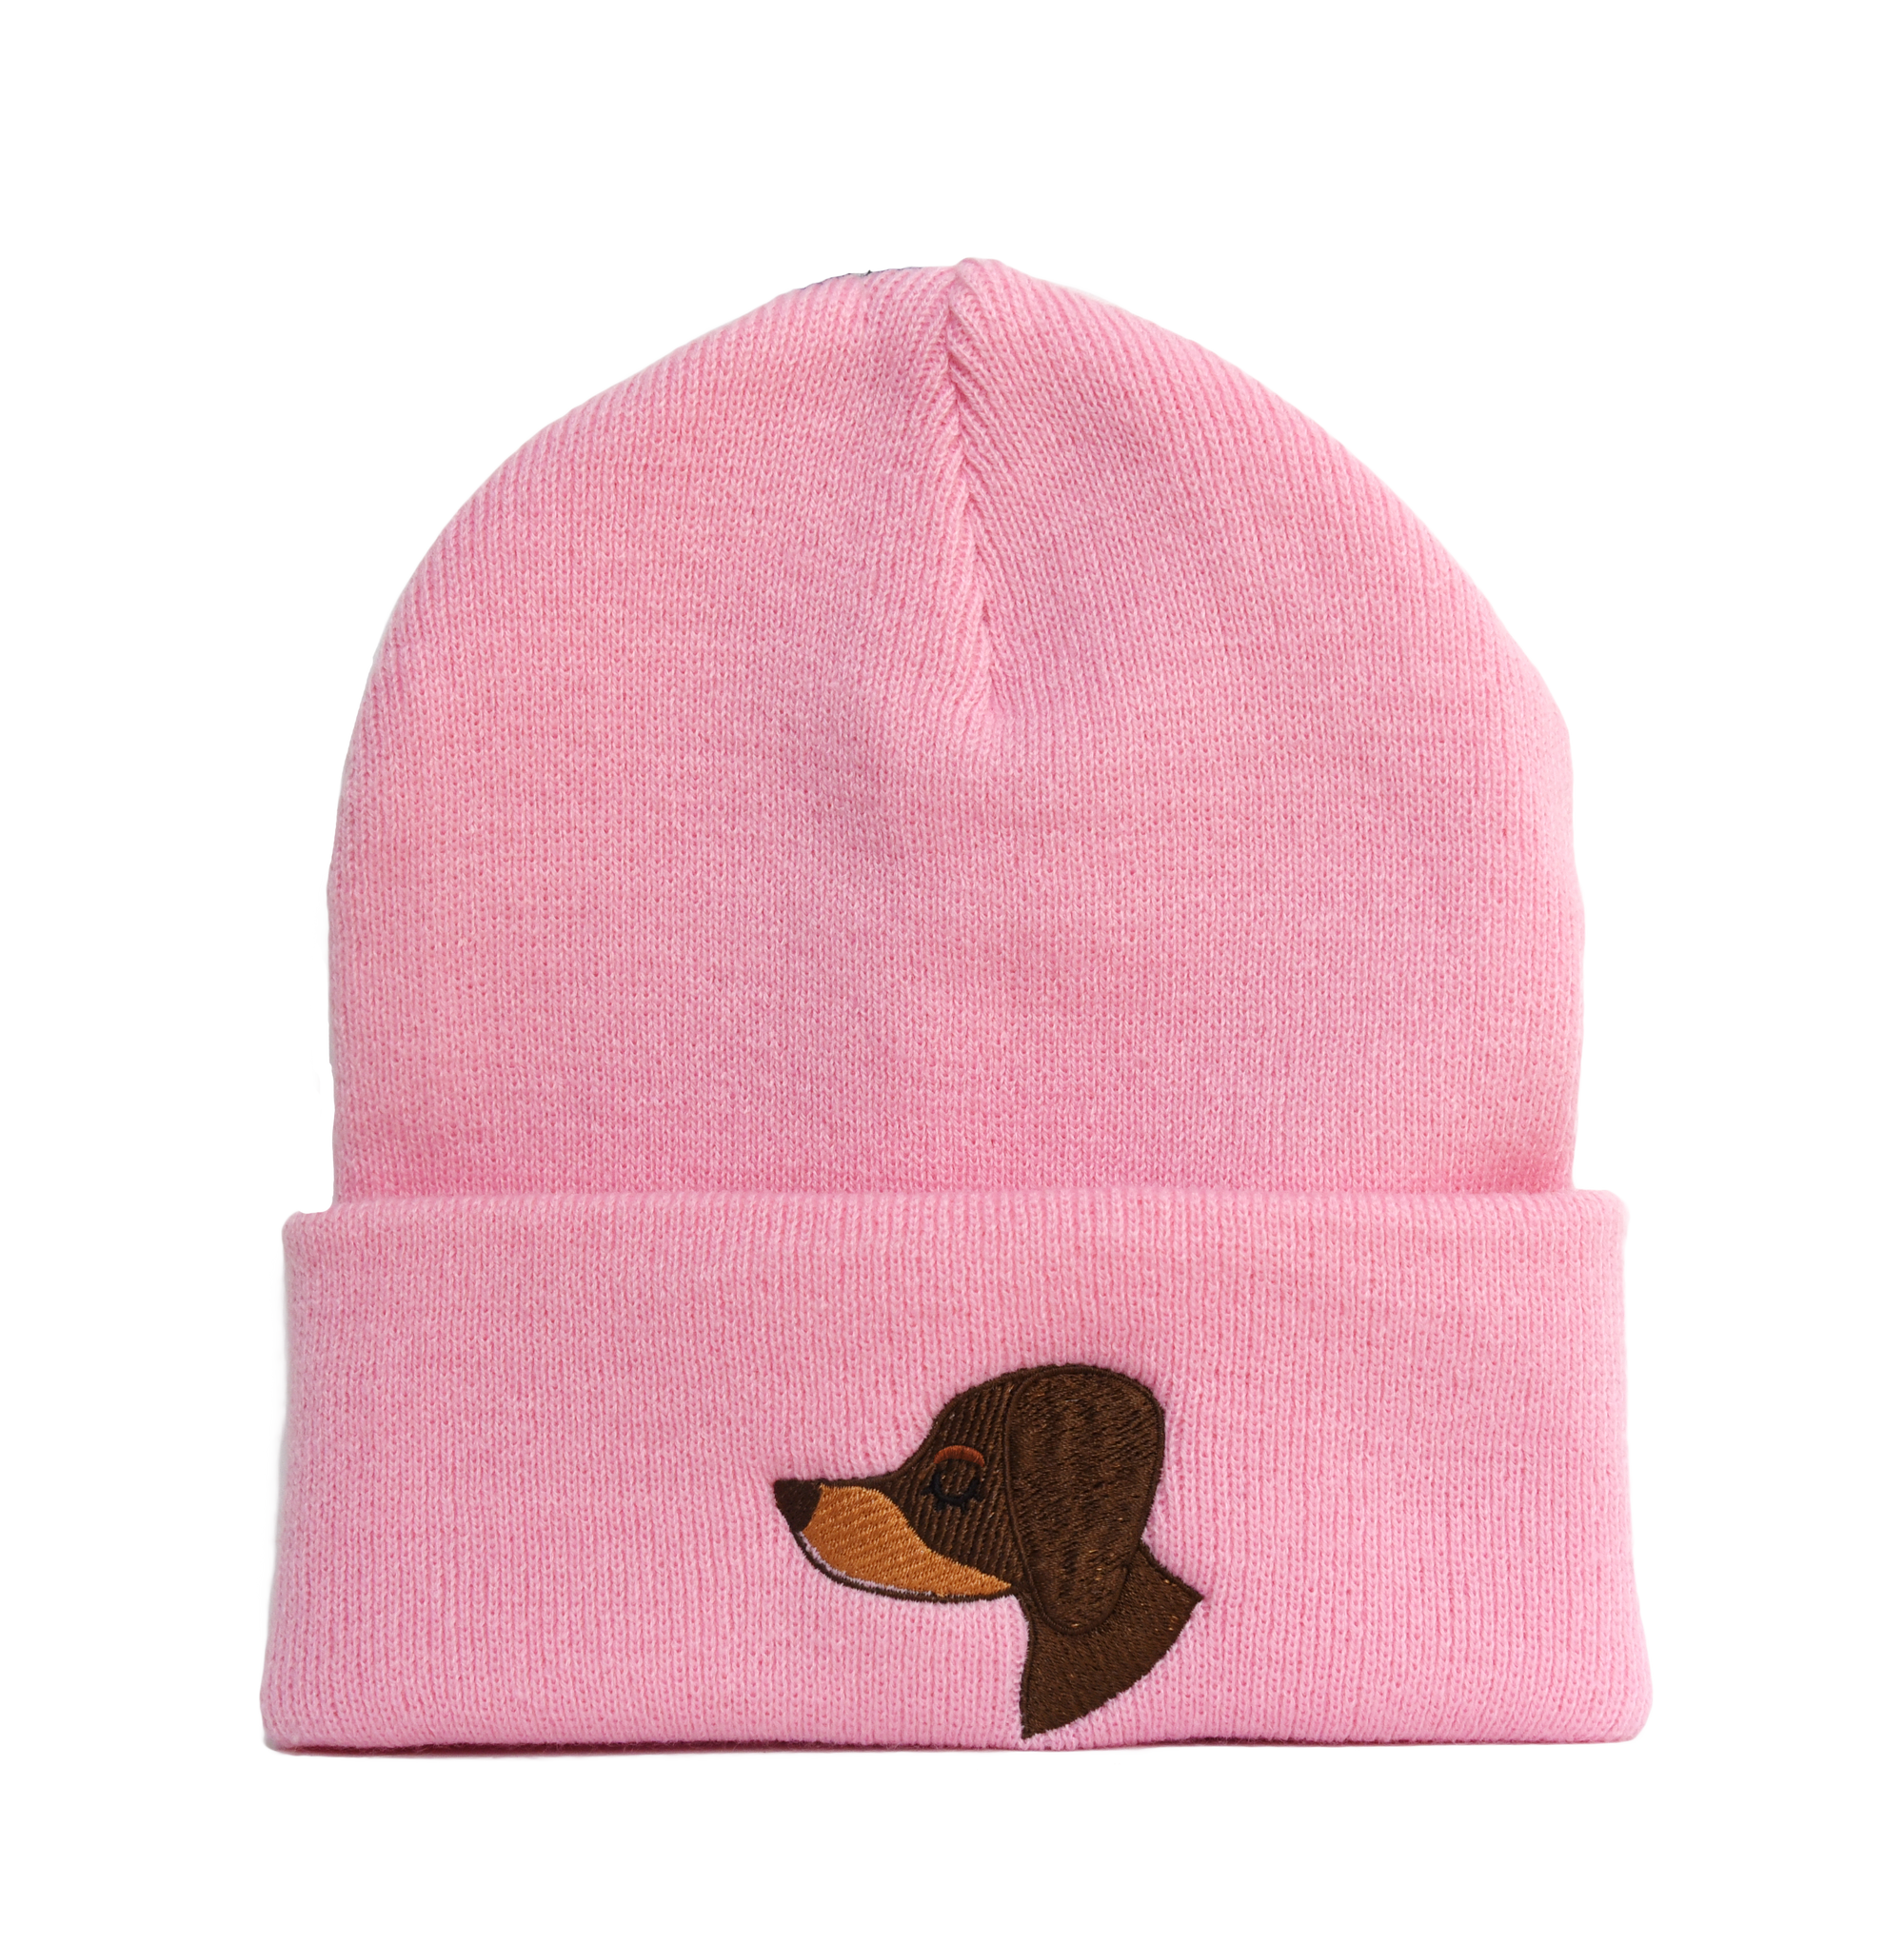 Dachshund Embroidered Beanie Hat